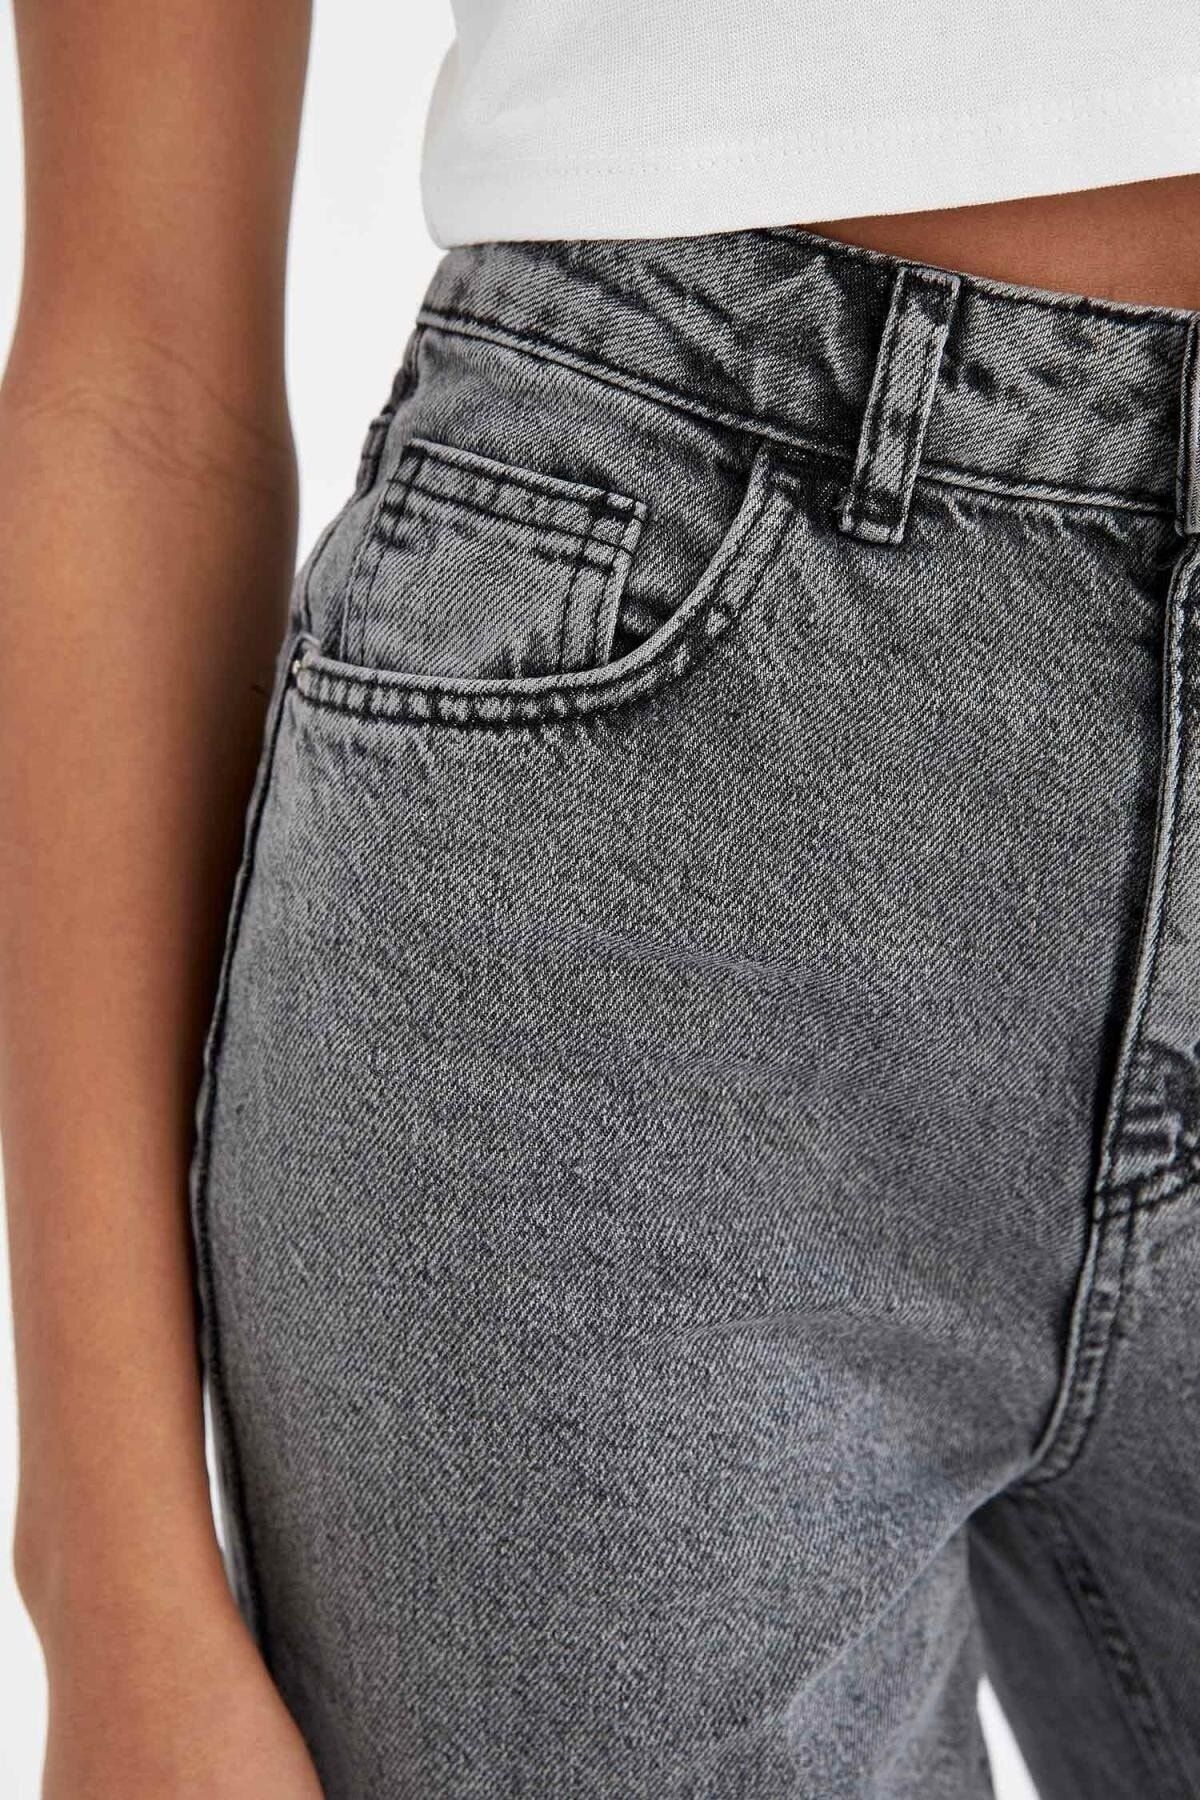 2Pcs Upgraded Boutons Extenseurs pour Jeans, Liban